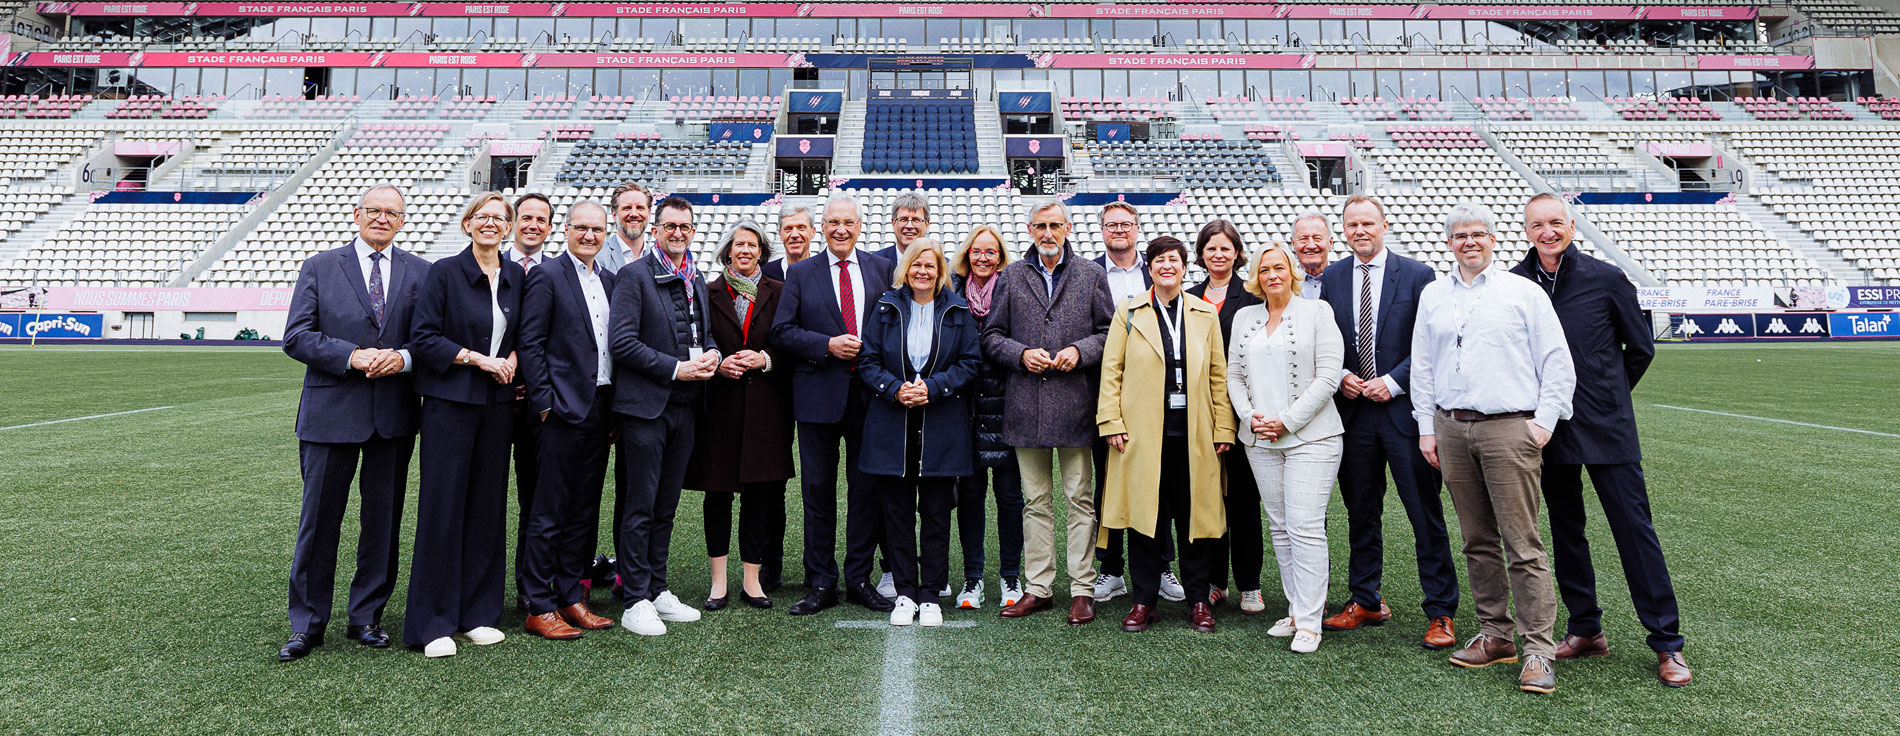 Gruppenbild der Sportministerinnen und -minister im Stadion